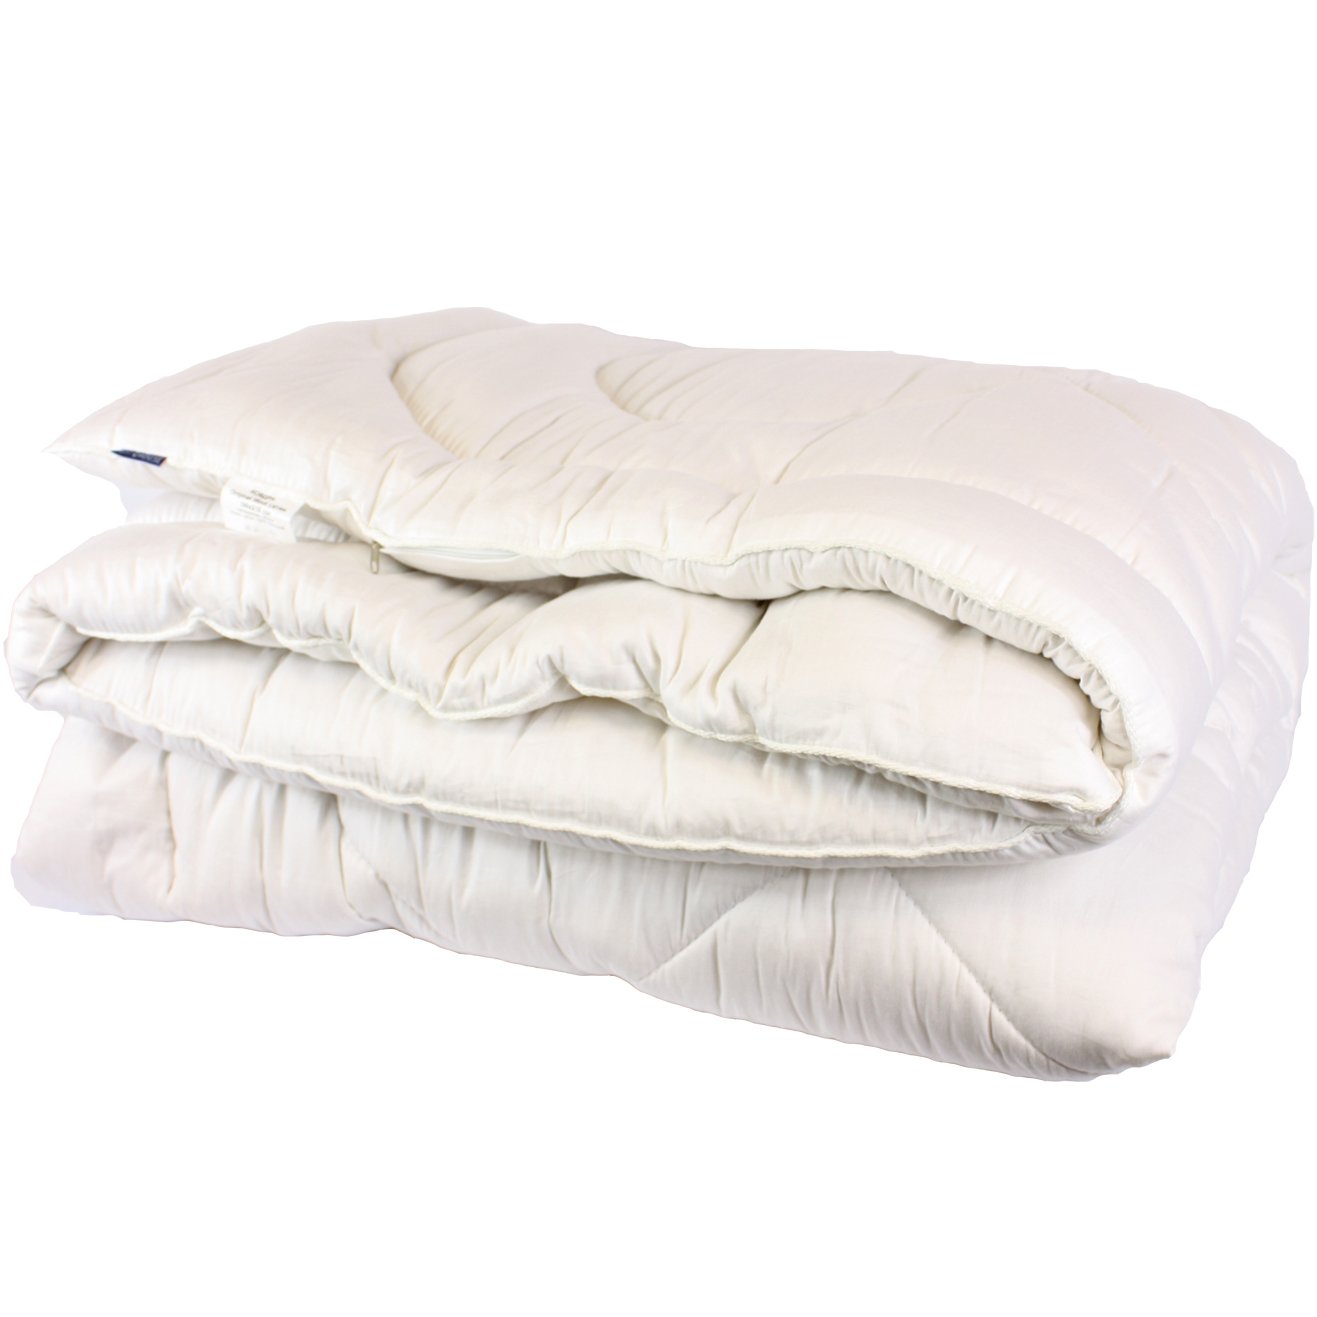 Одеяло шерстяное LightHouse Royal Wool, полуторное, 215х155 см, белое ( 38277) - фото 1